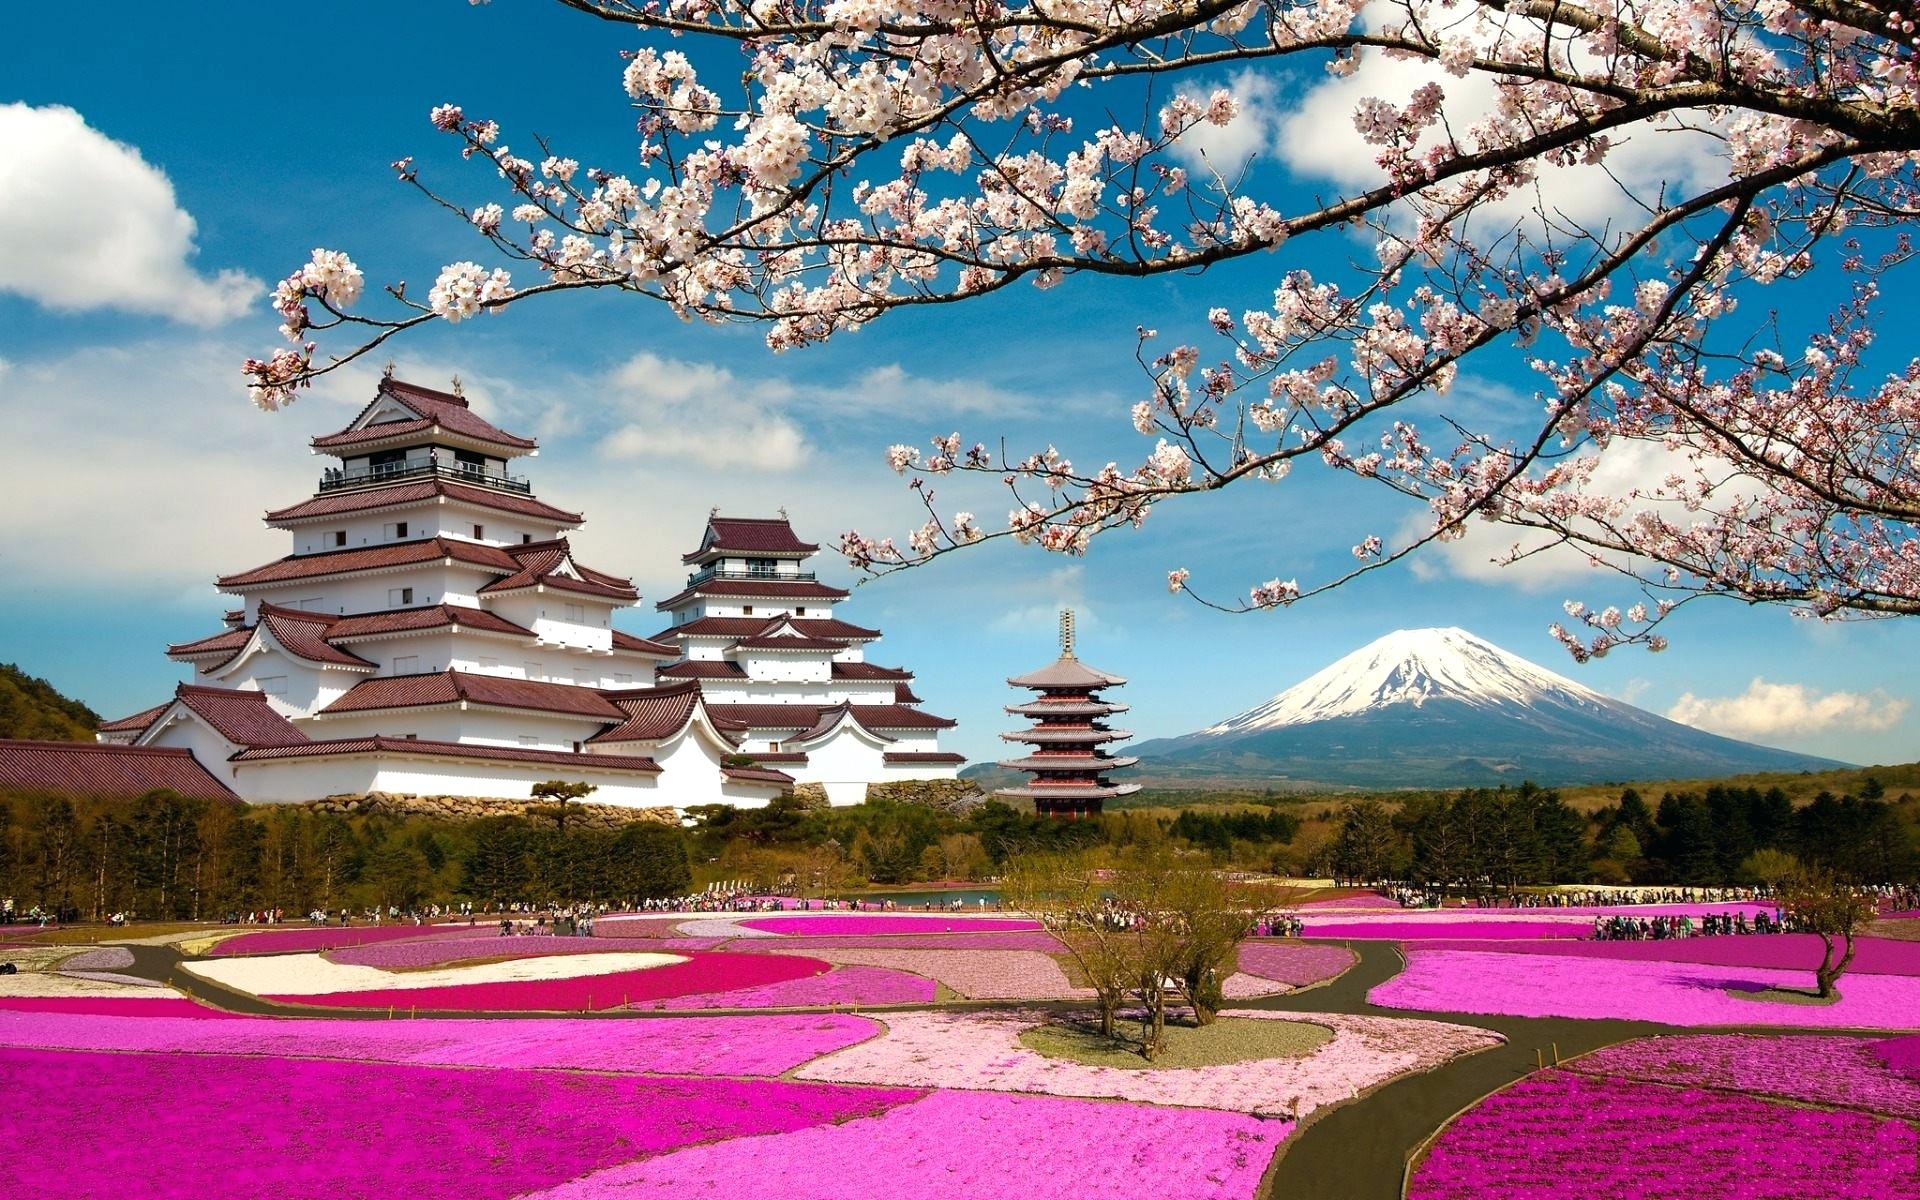 Fondos de paisajes de Japón - Los mejores fondos de paisajes de Japón